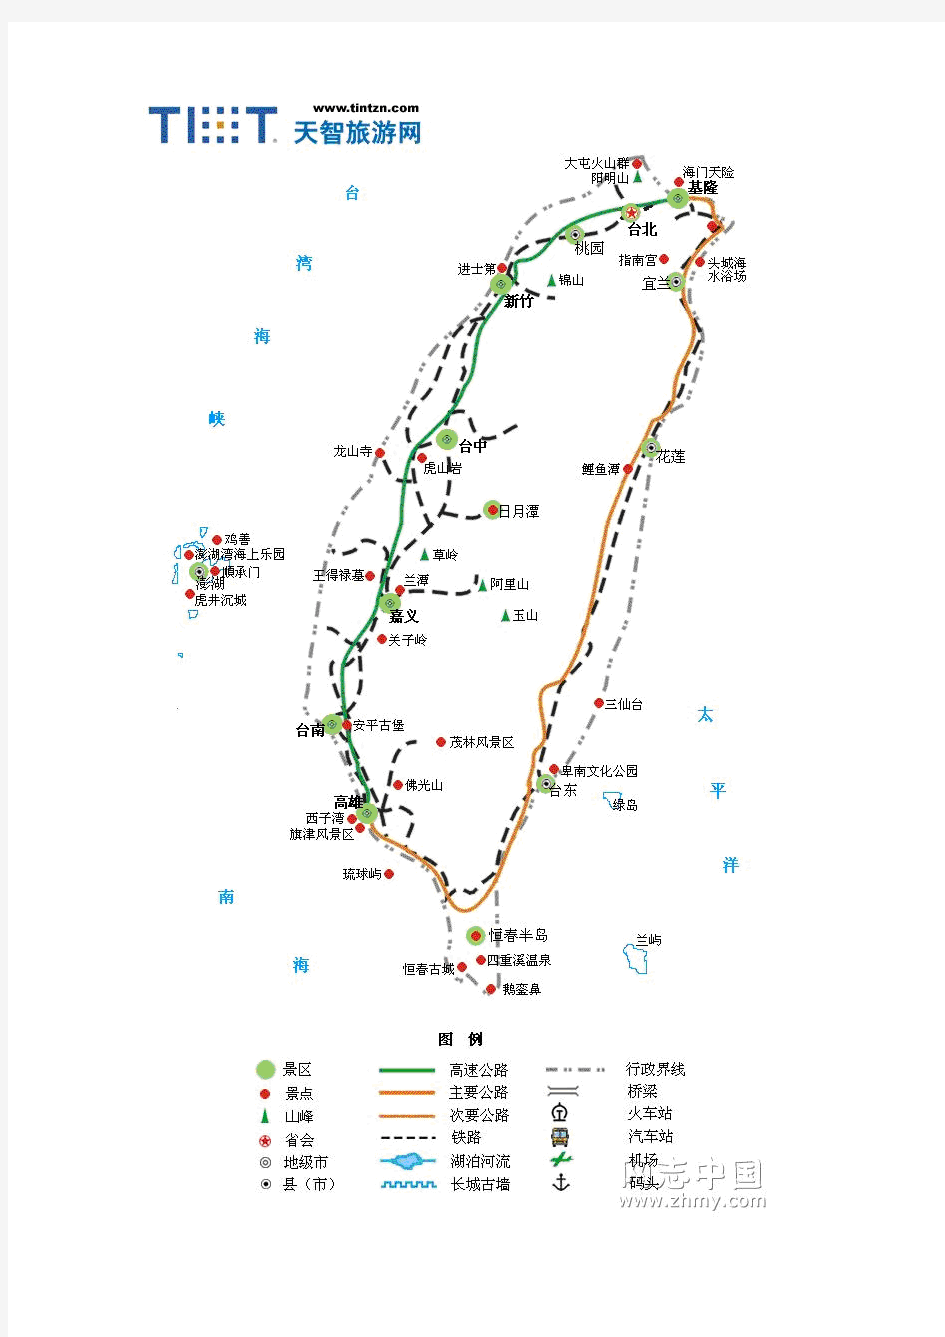 中国各省旅游景点路线地图